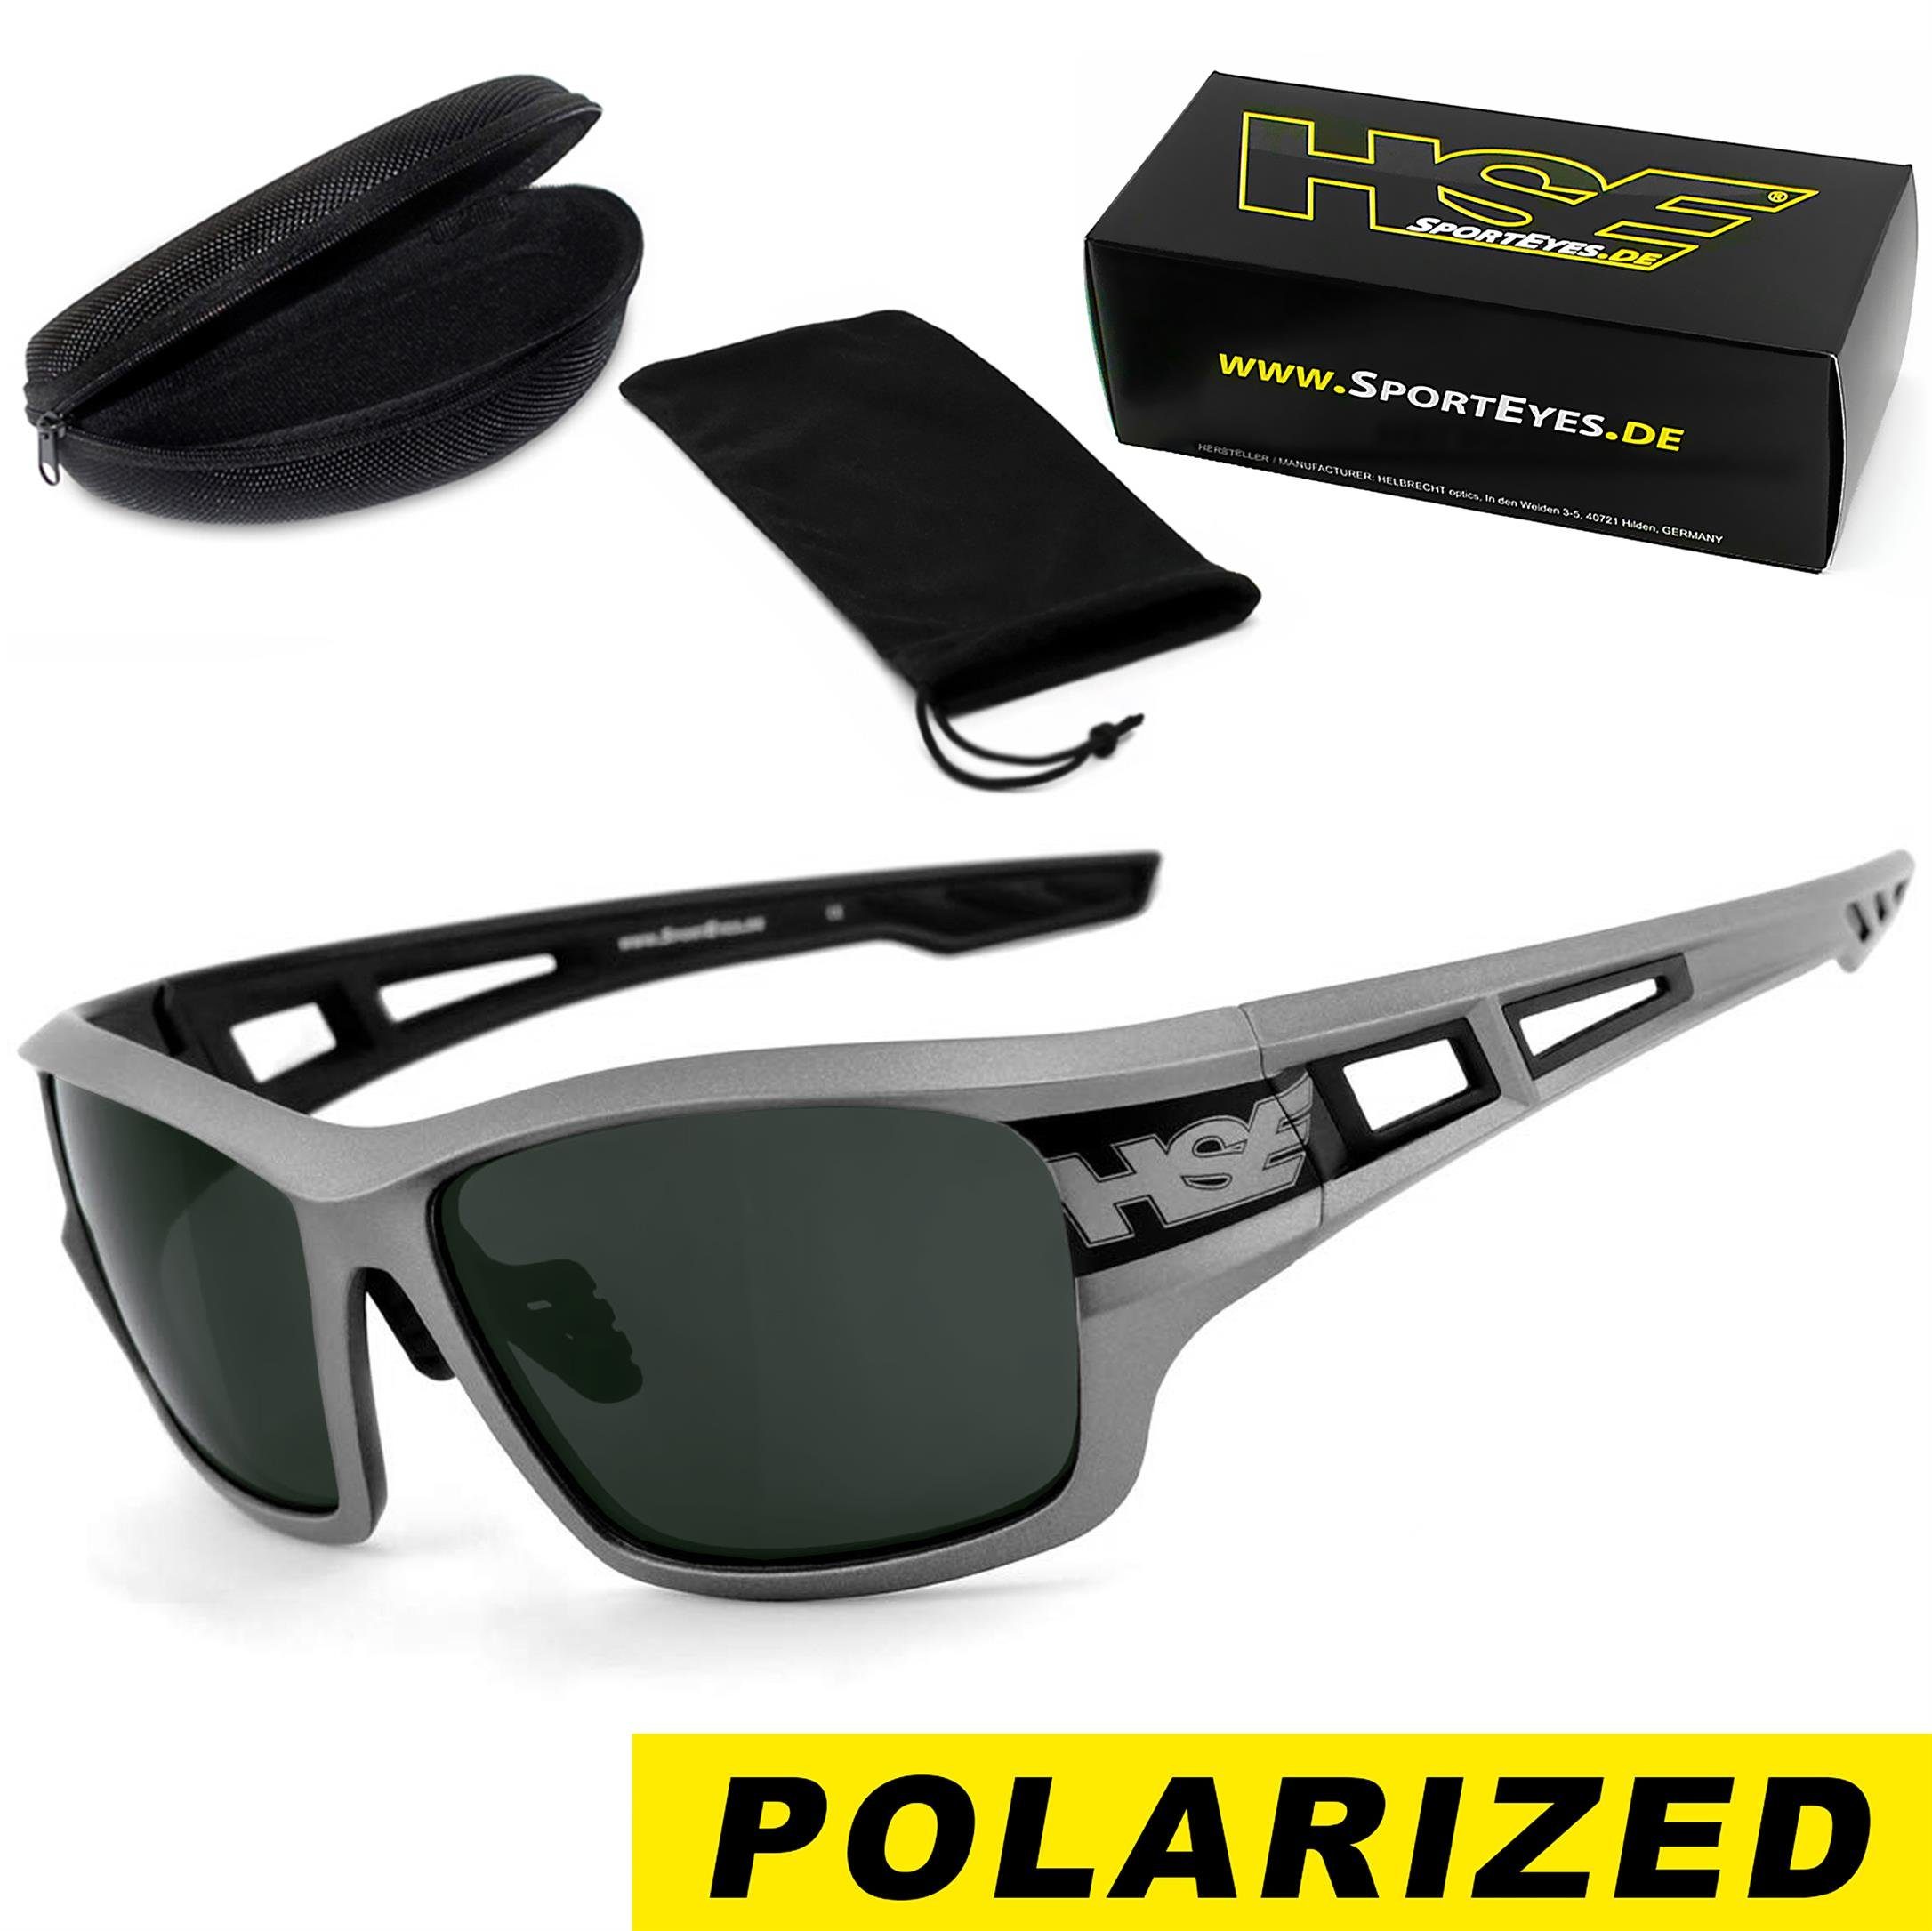 - 2095gm polarisierend, Kunststoff-Sicherheitsglas Steinschlagbeständig - SportEyes HSE Sportbrille durch